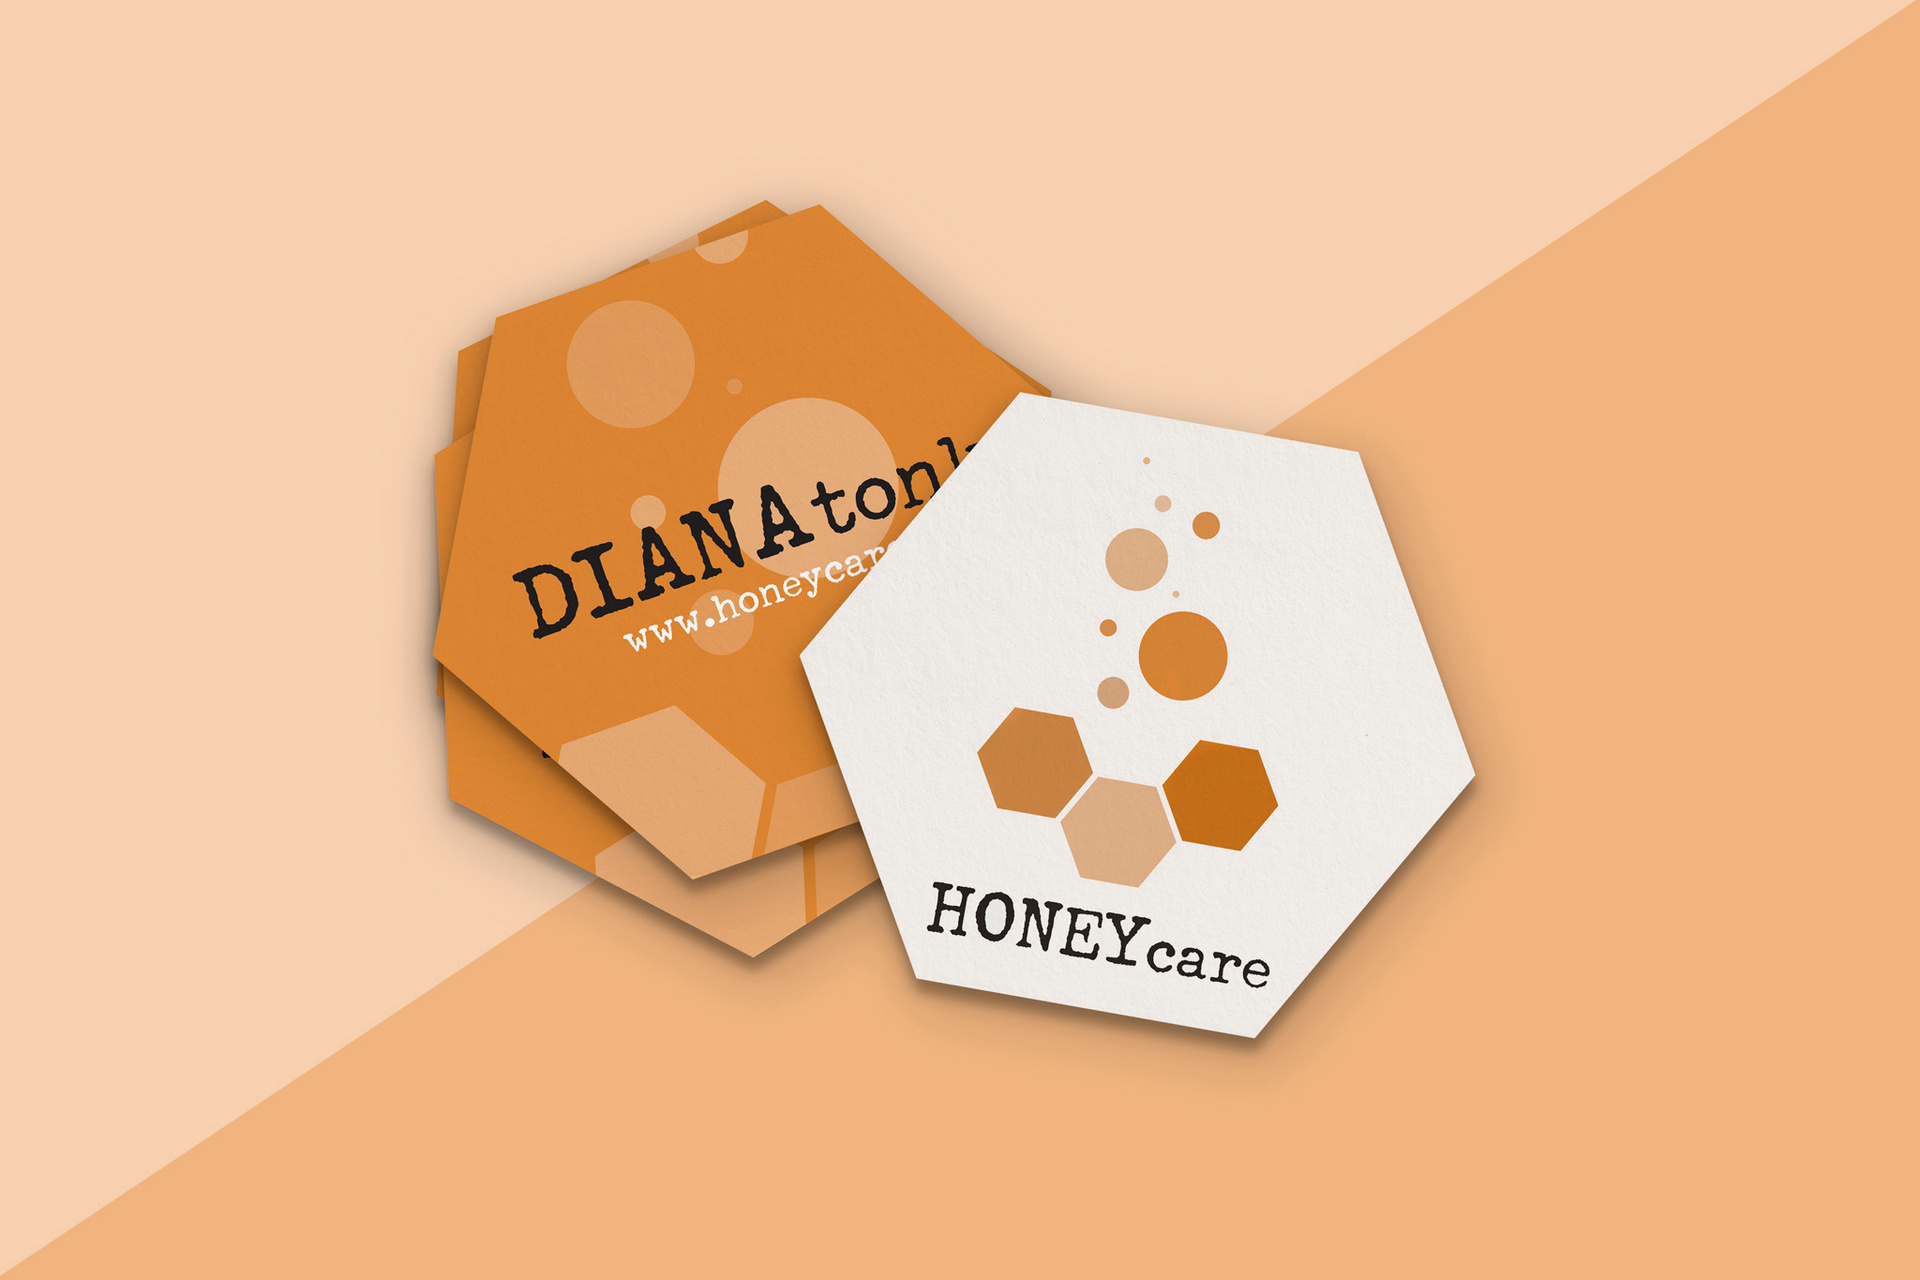 Honey care business cards design